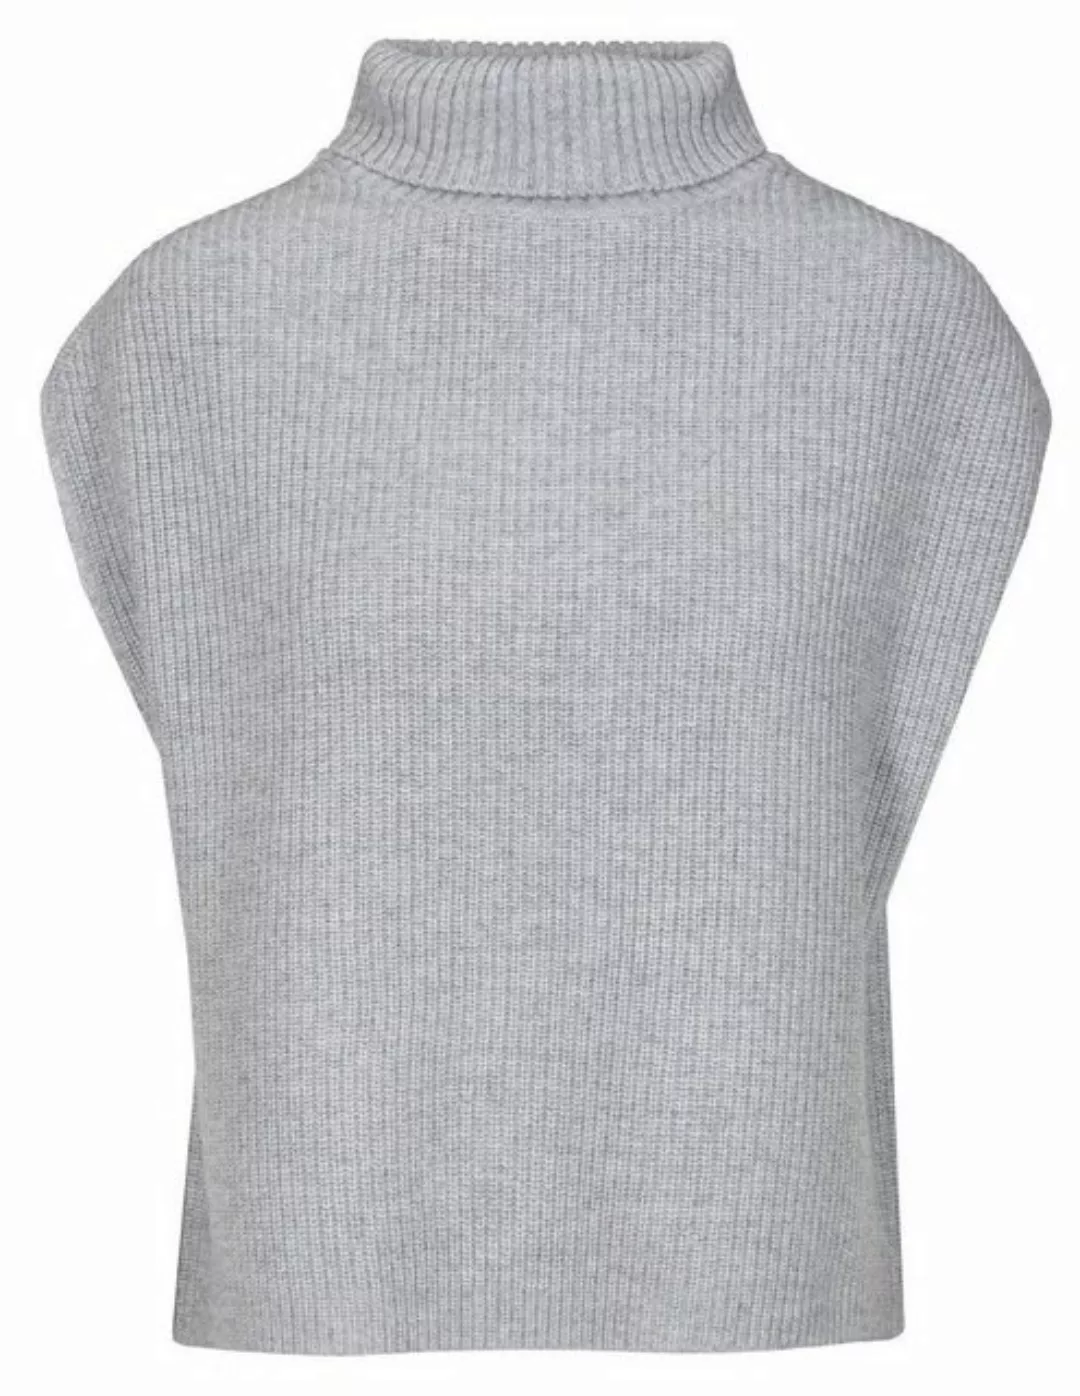 THE FASHION PEOPLE Sweatshirt Turtleneck vest knitted günstig online kaufen